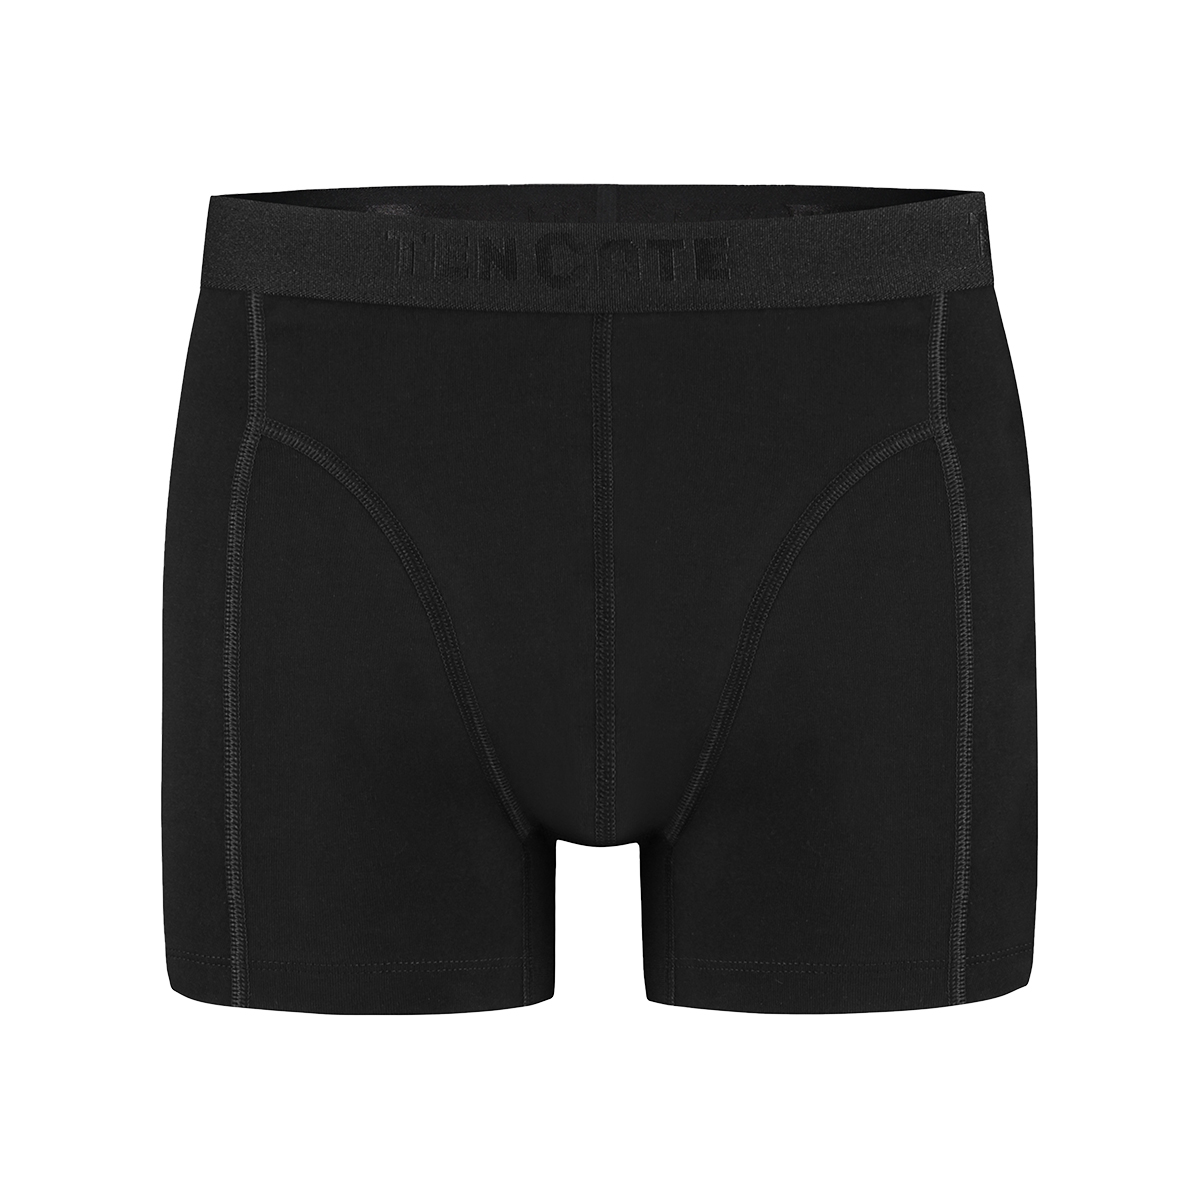 Shorts zwart 2 pack